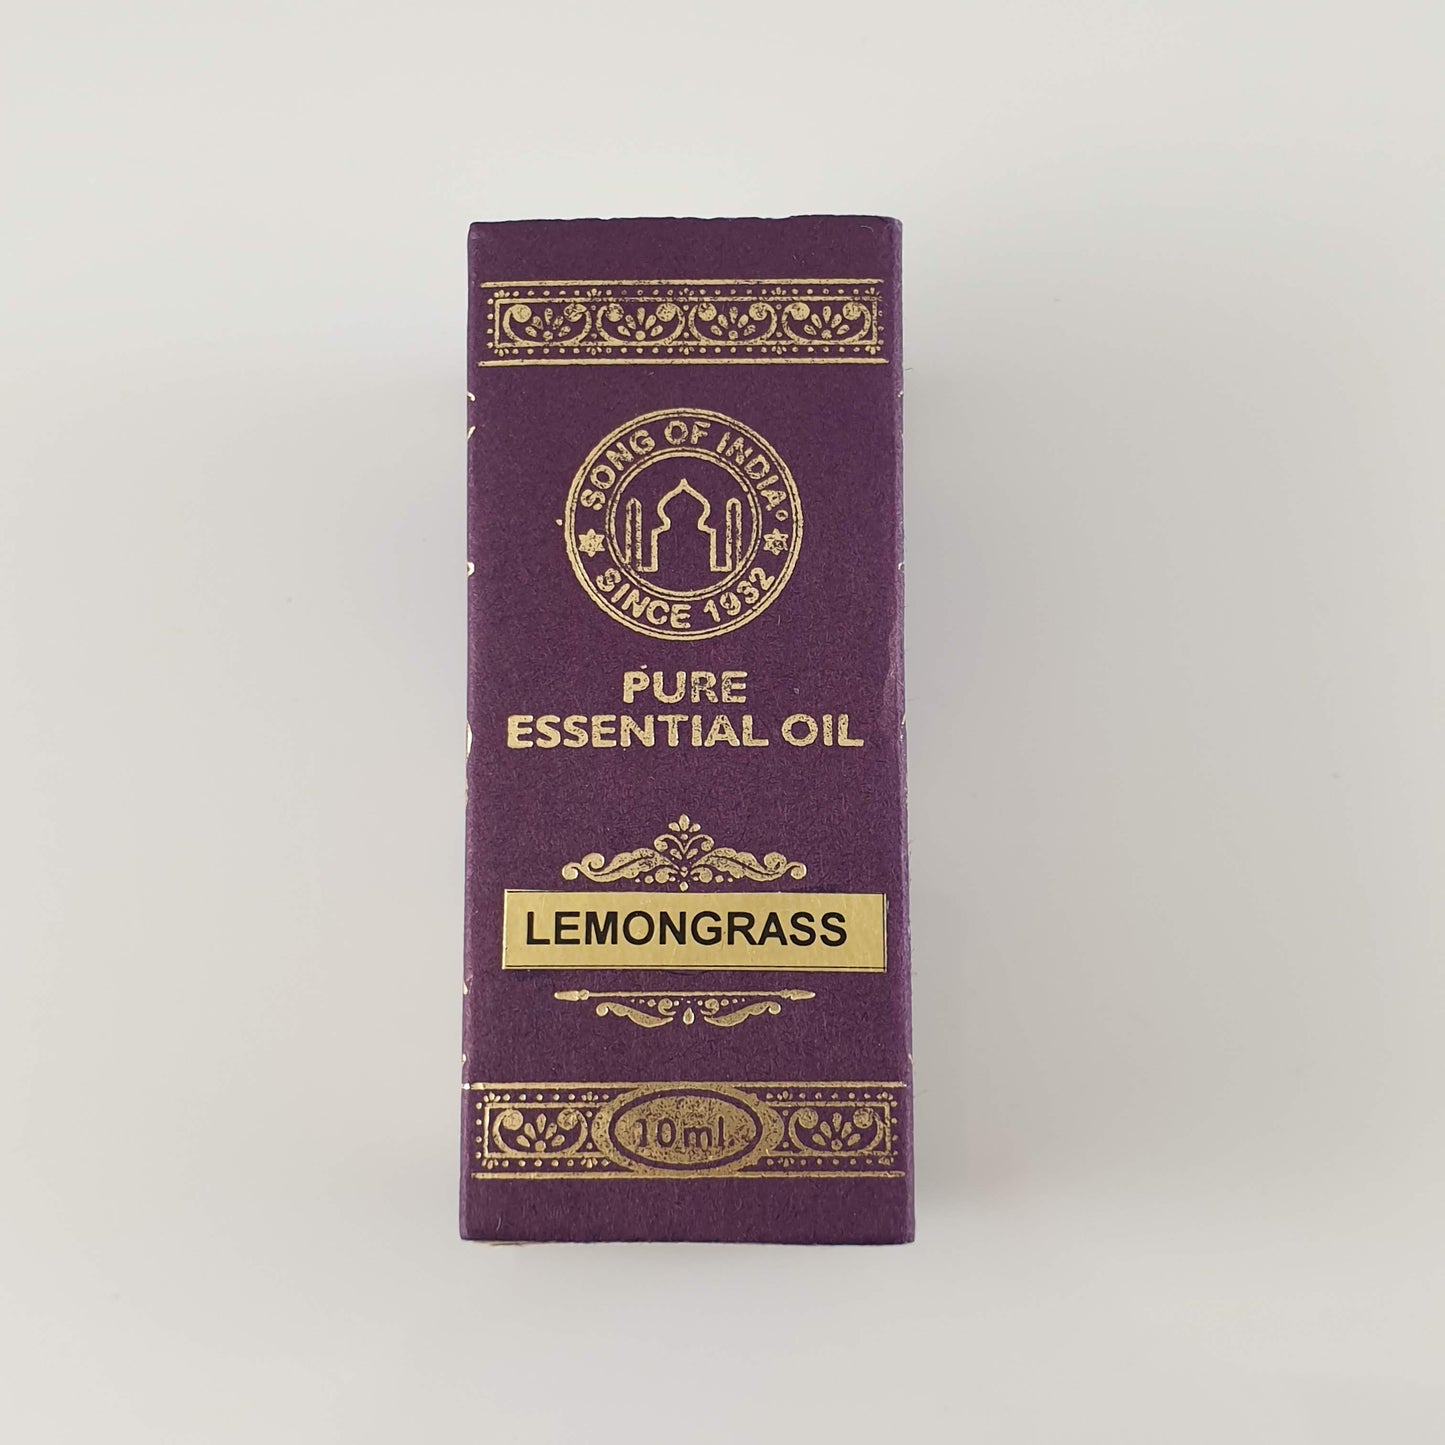 Song of India Essential Oil - Lemongrass 10ml - Rivendell Shop